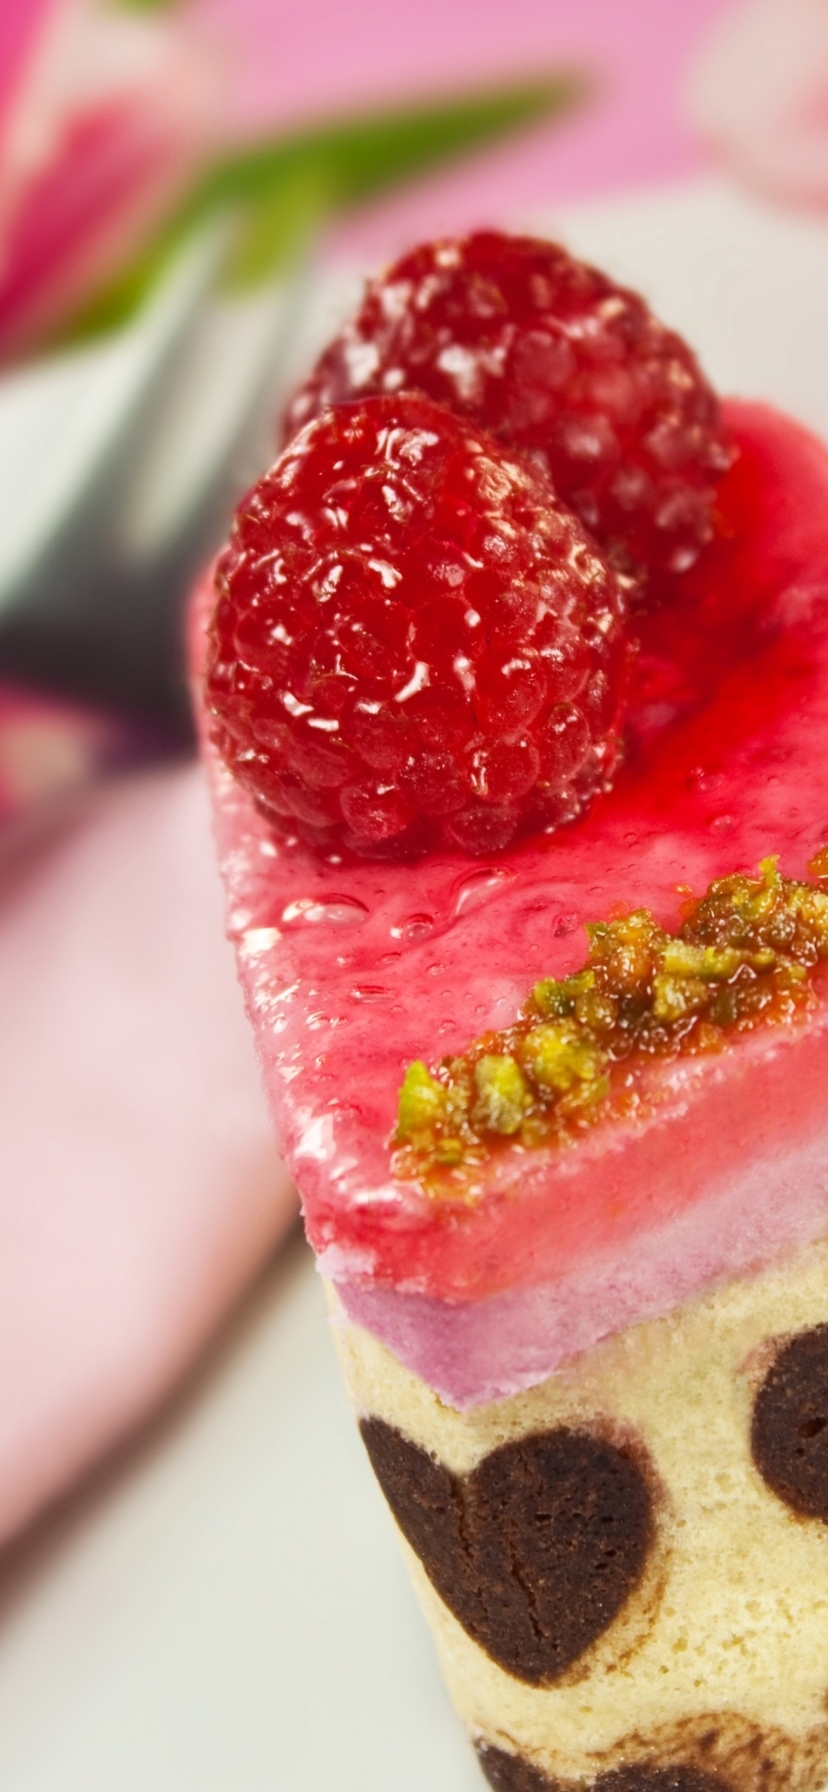 Картинка: Десерт, пирожное, сладость, малина, ягодки, шоколадные сердечки